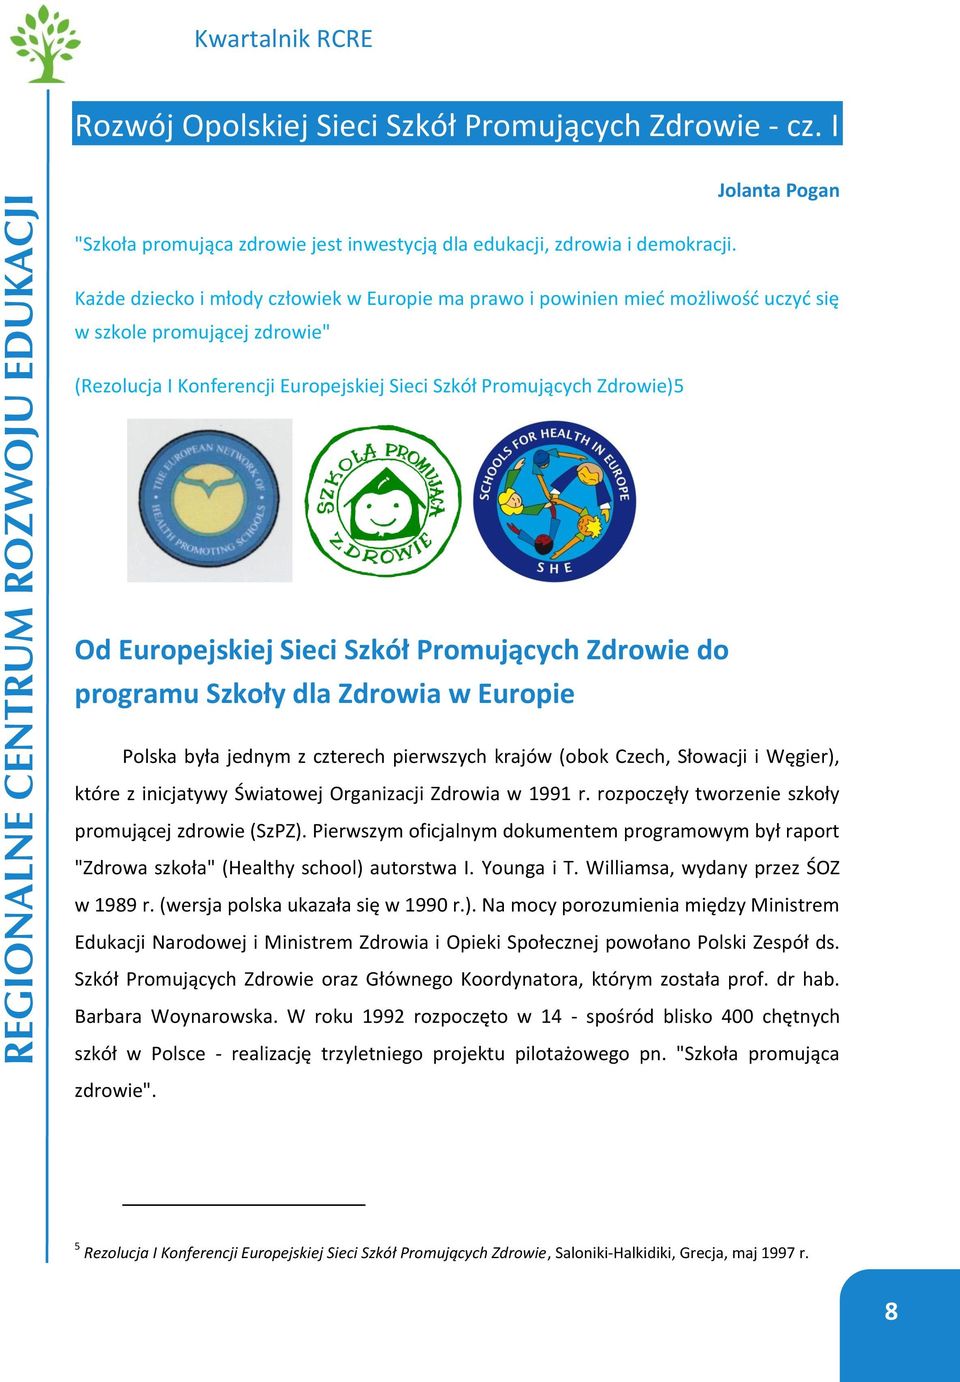 Europejskiej Sieci Szkół Promujących Zdrowie do programu Szkoły dla Zdrowia w Europie Polska była jednym z czterech pierwszych krajów (obok Czech, Słowacji i Węgier), które z inicjatywy Światowej